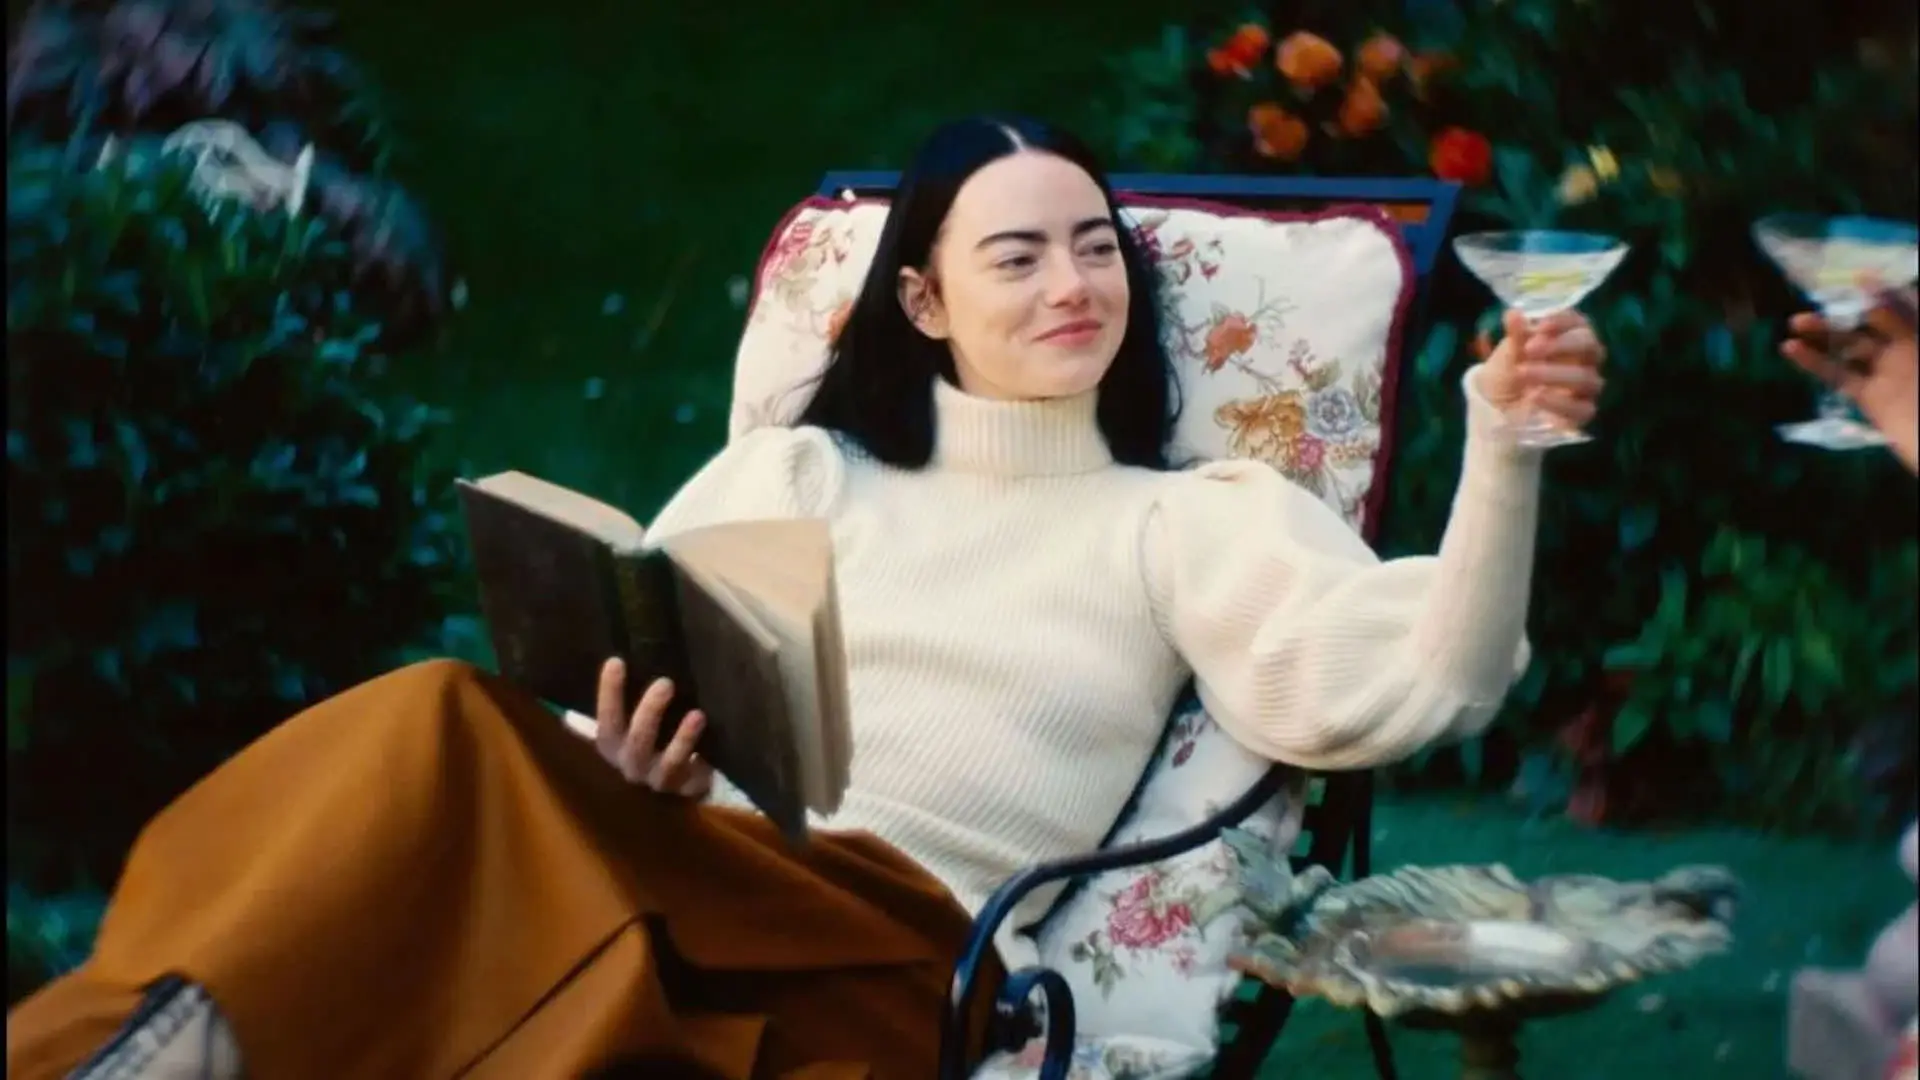 اما استون با یک لیوان نوشیدنی در یک دست و یک کتاب در دستی دیگر با لبخندی بر لب نشسته در آسایش در نمایی از فیلم بیچارگان به کارگردانی یورگوس لانتیموس